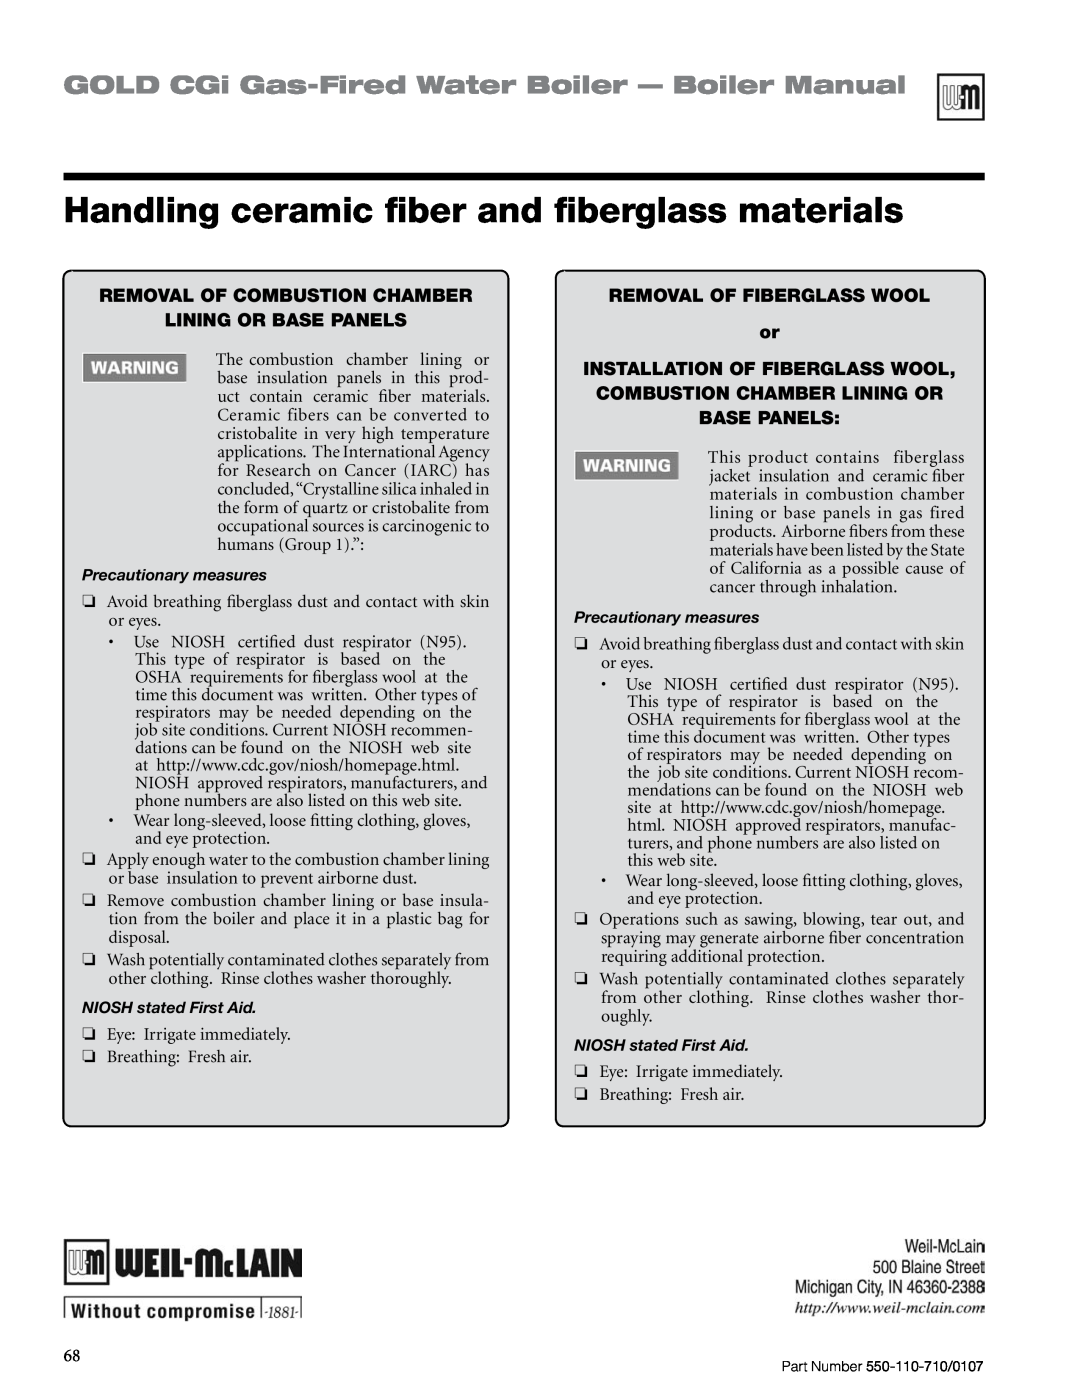 Weil-McLain Series 2 manual Handling ceramic fiber and fiberglass materials, GOLD CGi Gas-FiredWater Boiler — Boiler Manual 